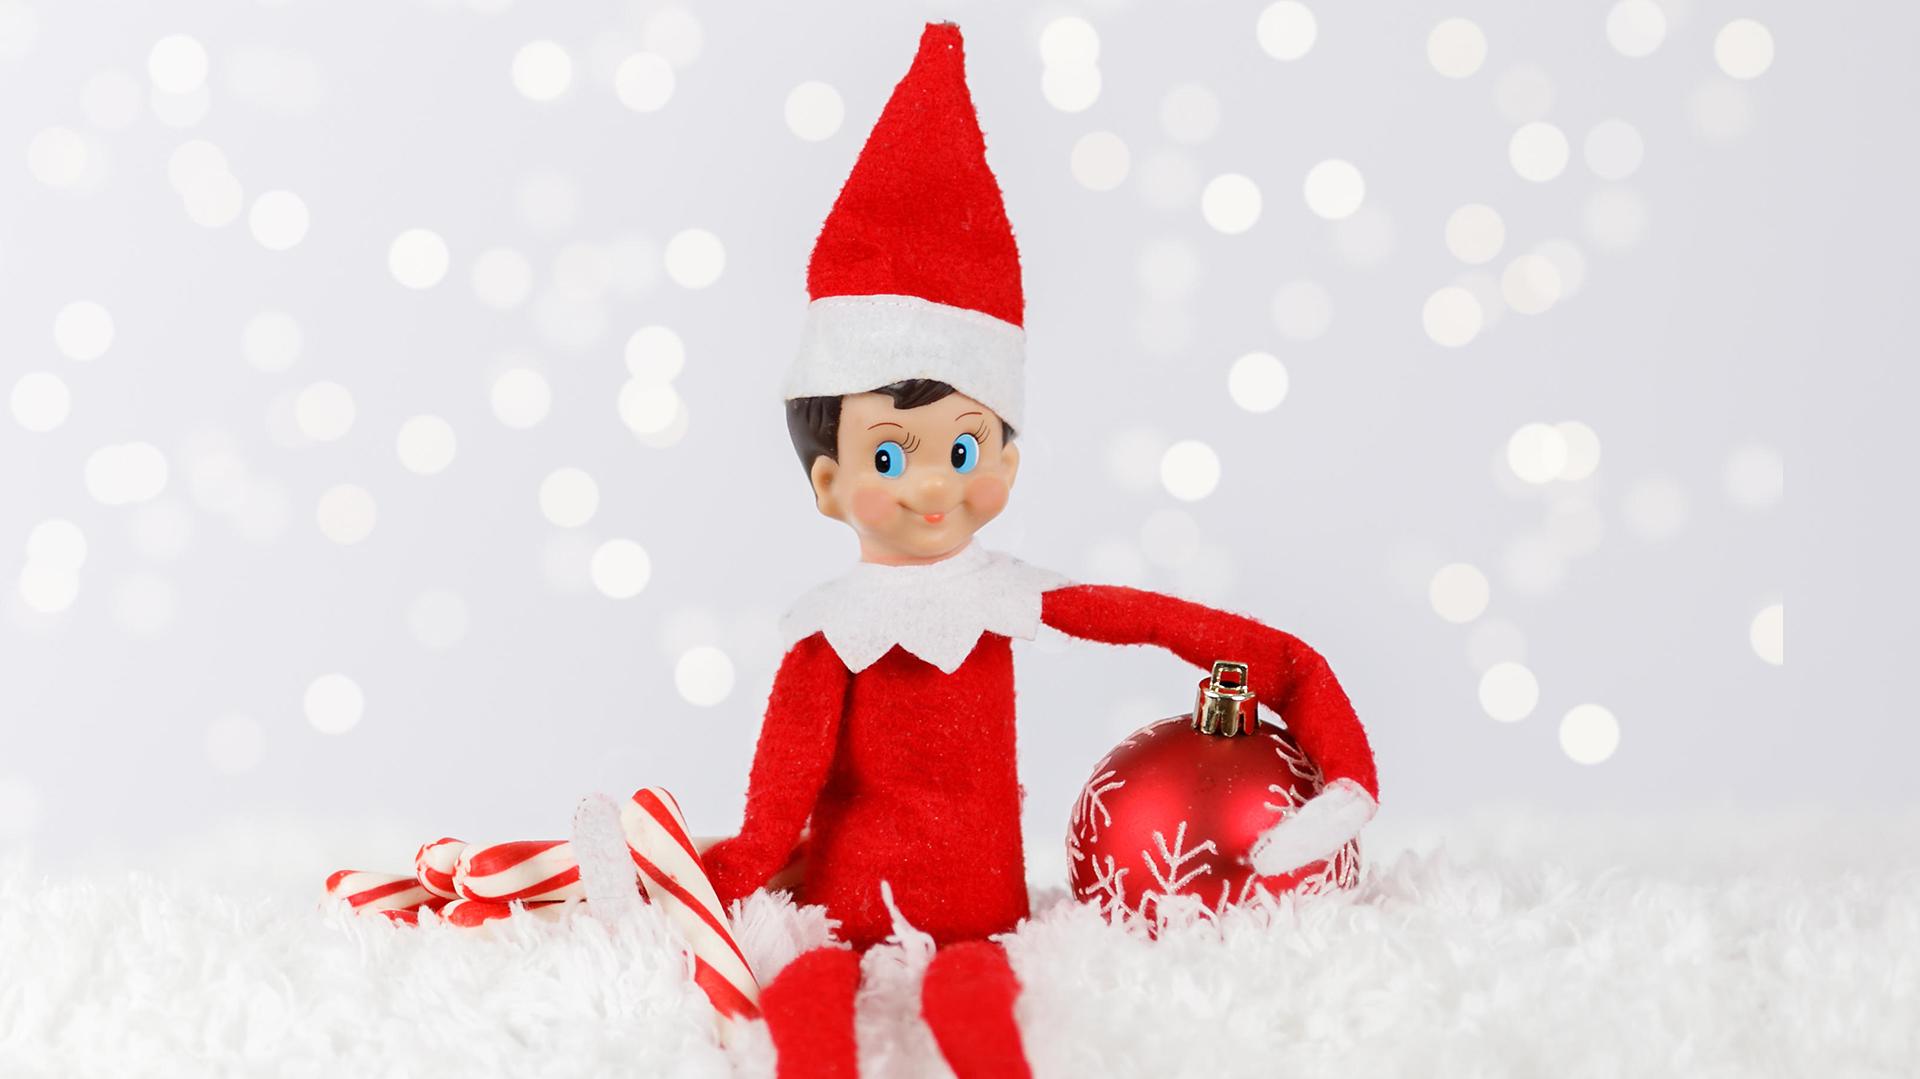 Santa fires back after judge bans Elf on a Shelf